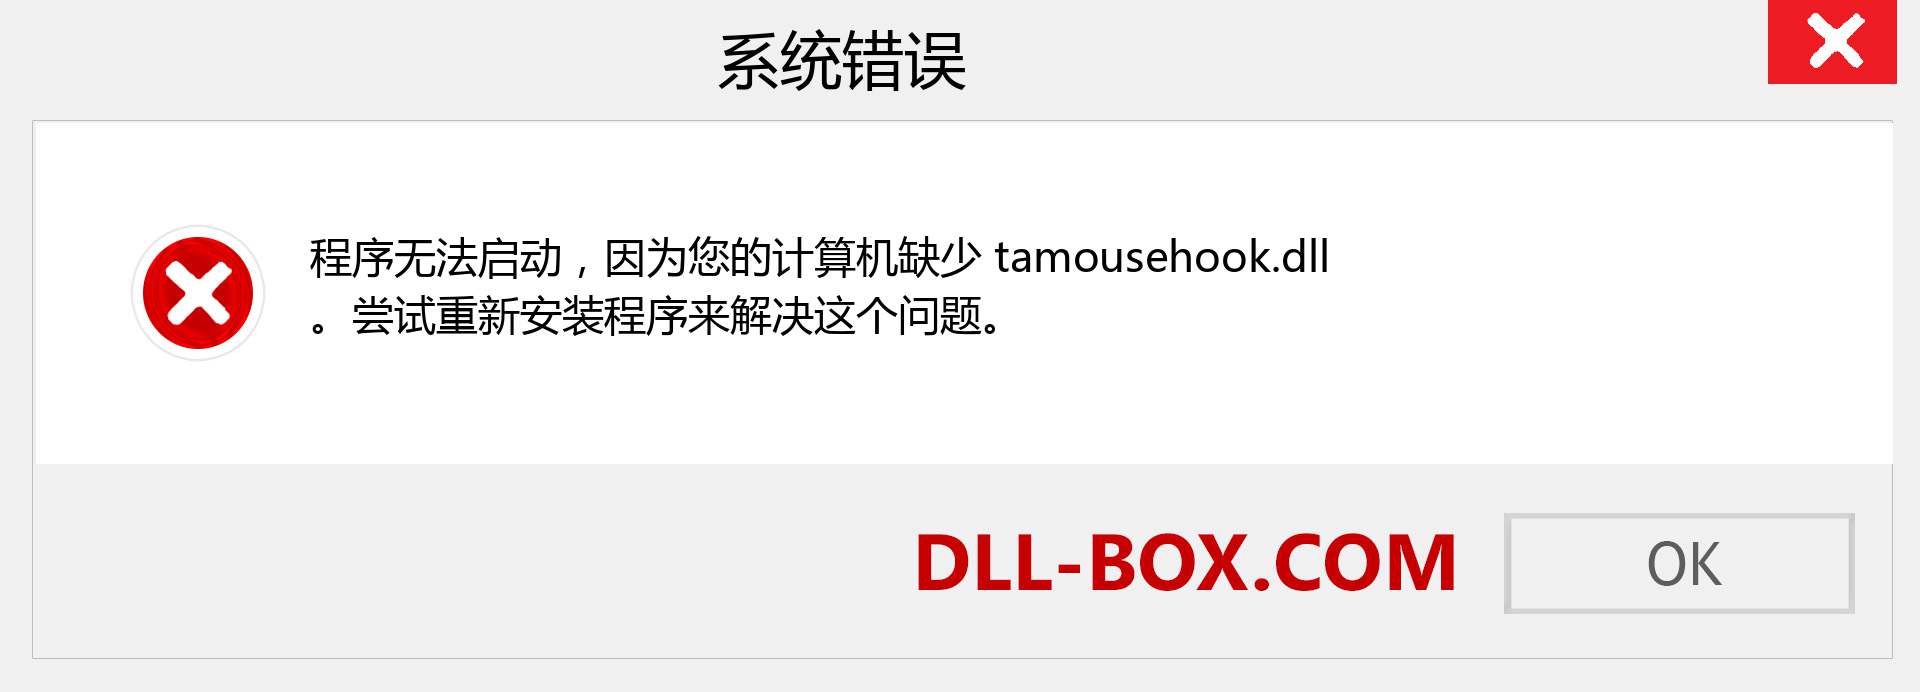 tamousehook.dll 文件丢失？。 适用于 Windows 7、8、10 的下载 - 修复 Windows、照片、图像上的 tamousehook dll 丢失错误